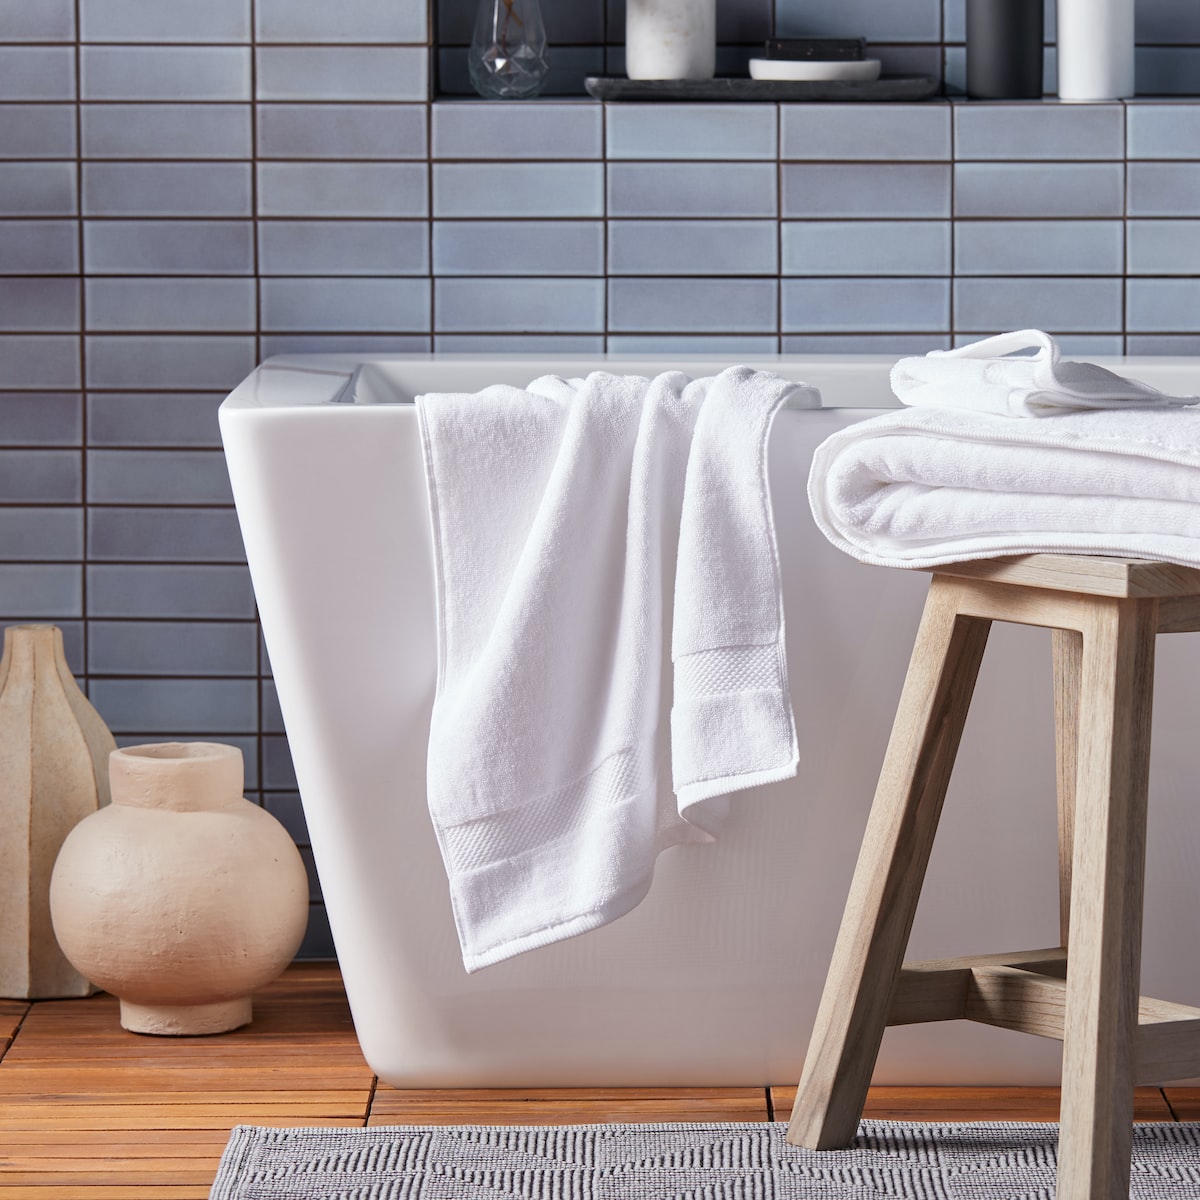 Serviettes de refroidissement – Une paire de serviettes cool pour rafraîchir votre journée!